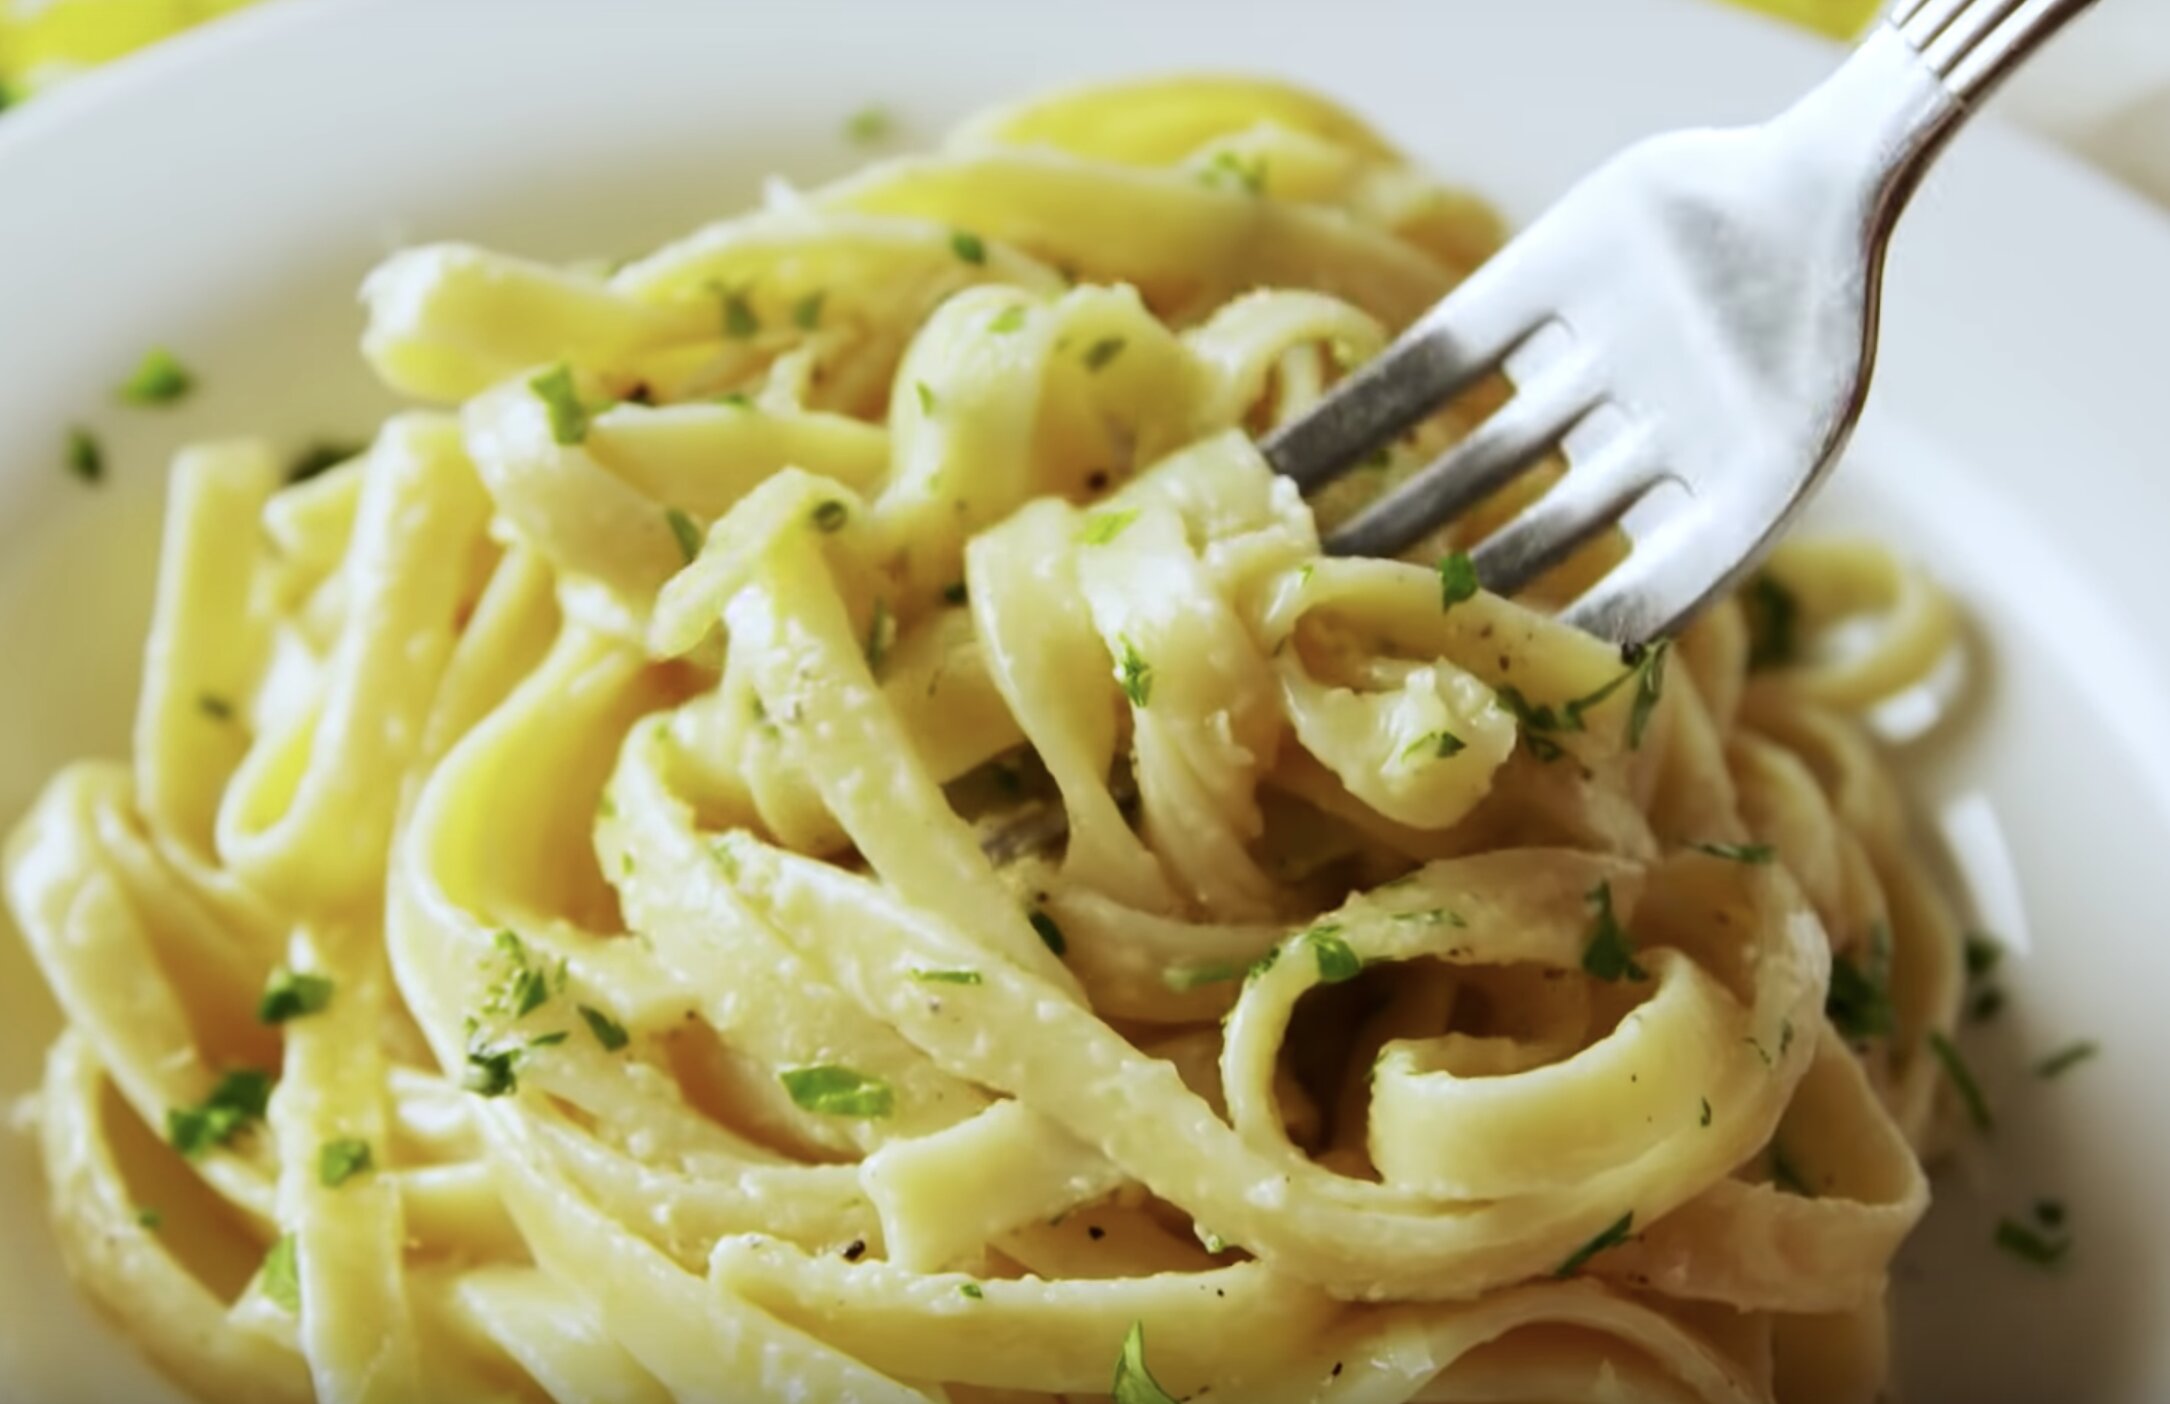 Vain 20 minuuttia ja täydellinen pasta-annos on valmis – tämä resepti kerää  vuolaita kehuja